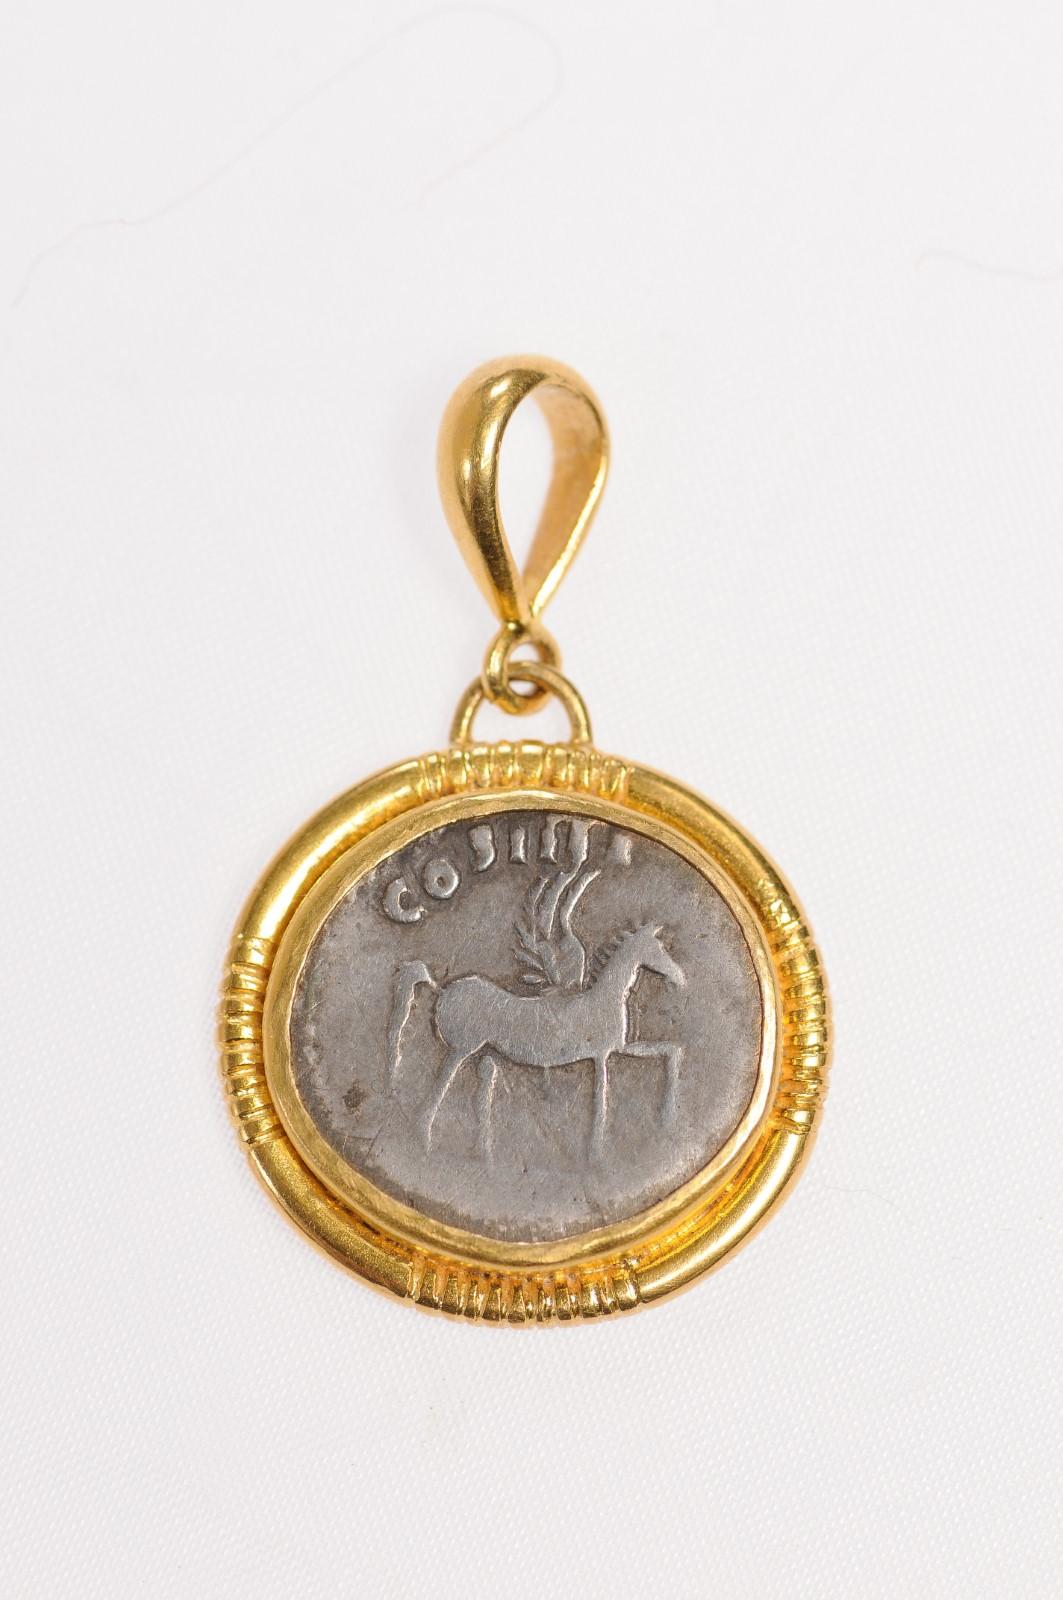 Eine authentische Domitian, Silber Denarius Münze (CIRCA 76 AD), in einem benutzerdefinierten 22k Gold Lünette mit 22k Gold Bügel gesetzt. Der Anhänger zeigt einen geflügelten Pegasus, stehend rechts mit erhobenem Fuß, mit COS IIII darüber. Die